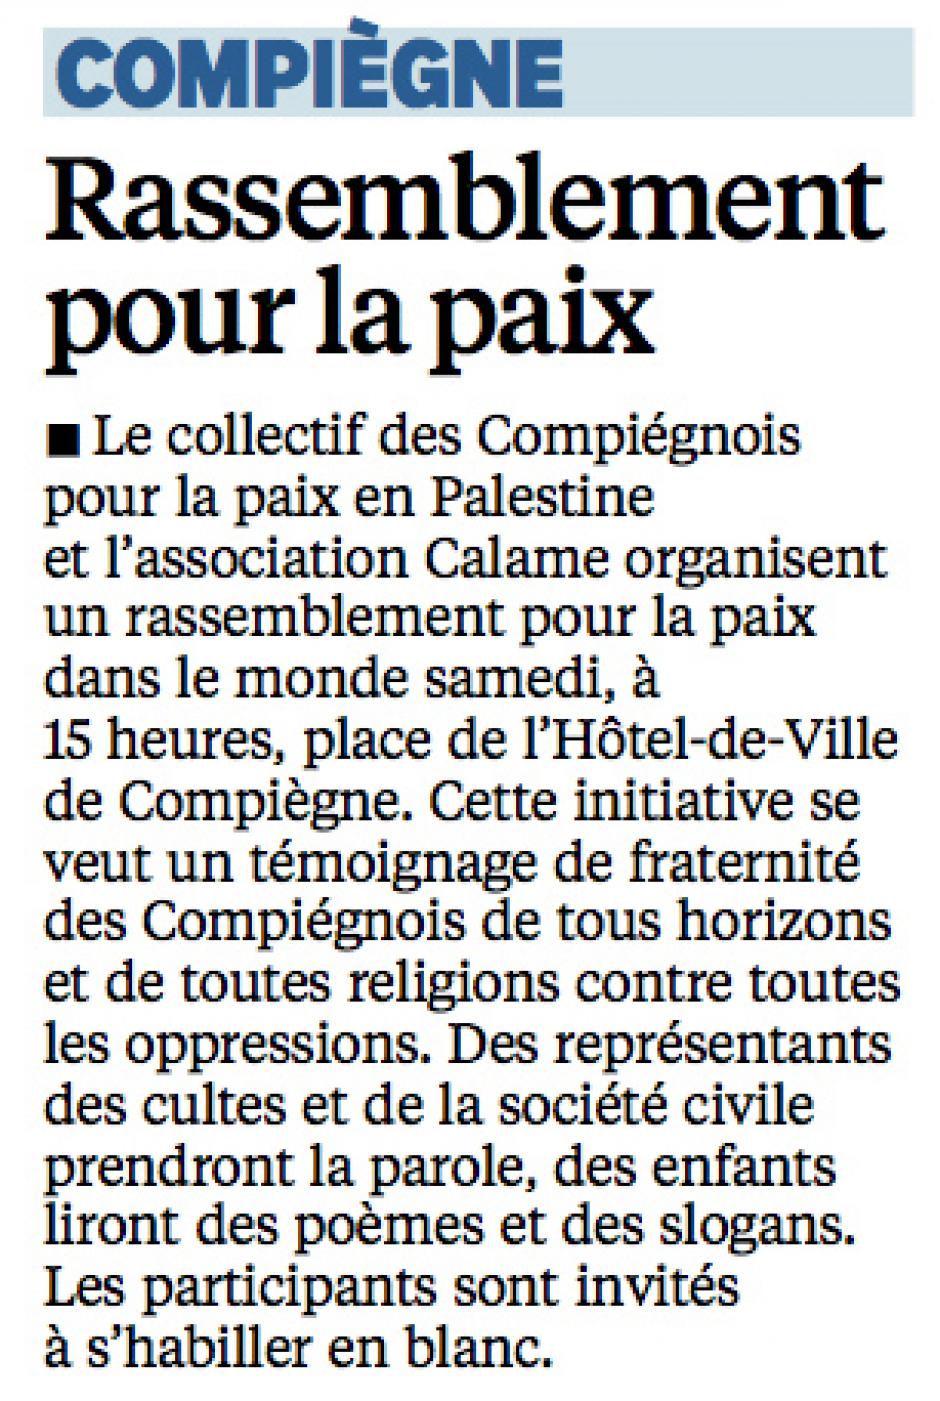 20141106-LeP-Compiègne-Rassemblement pour la paix